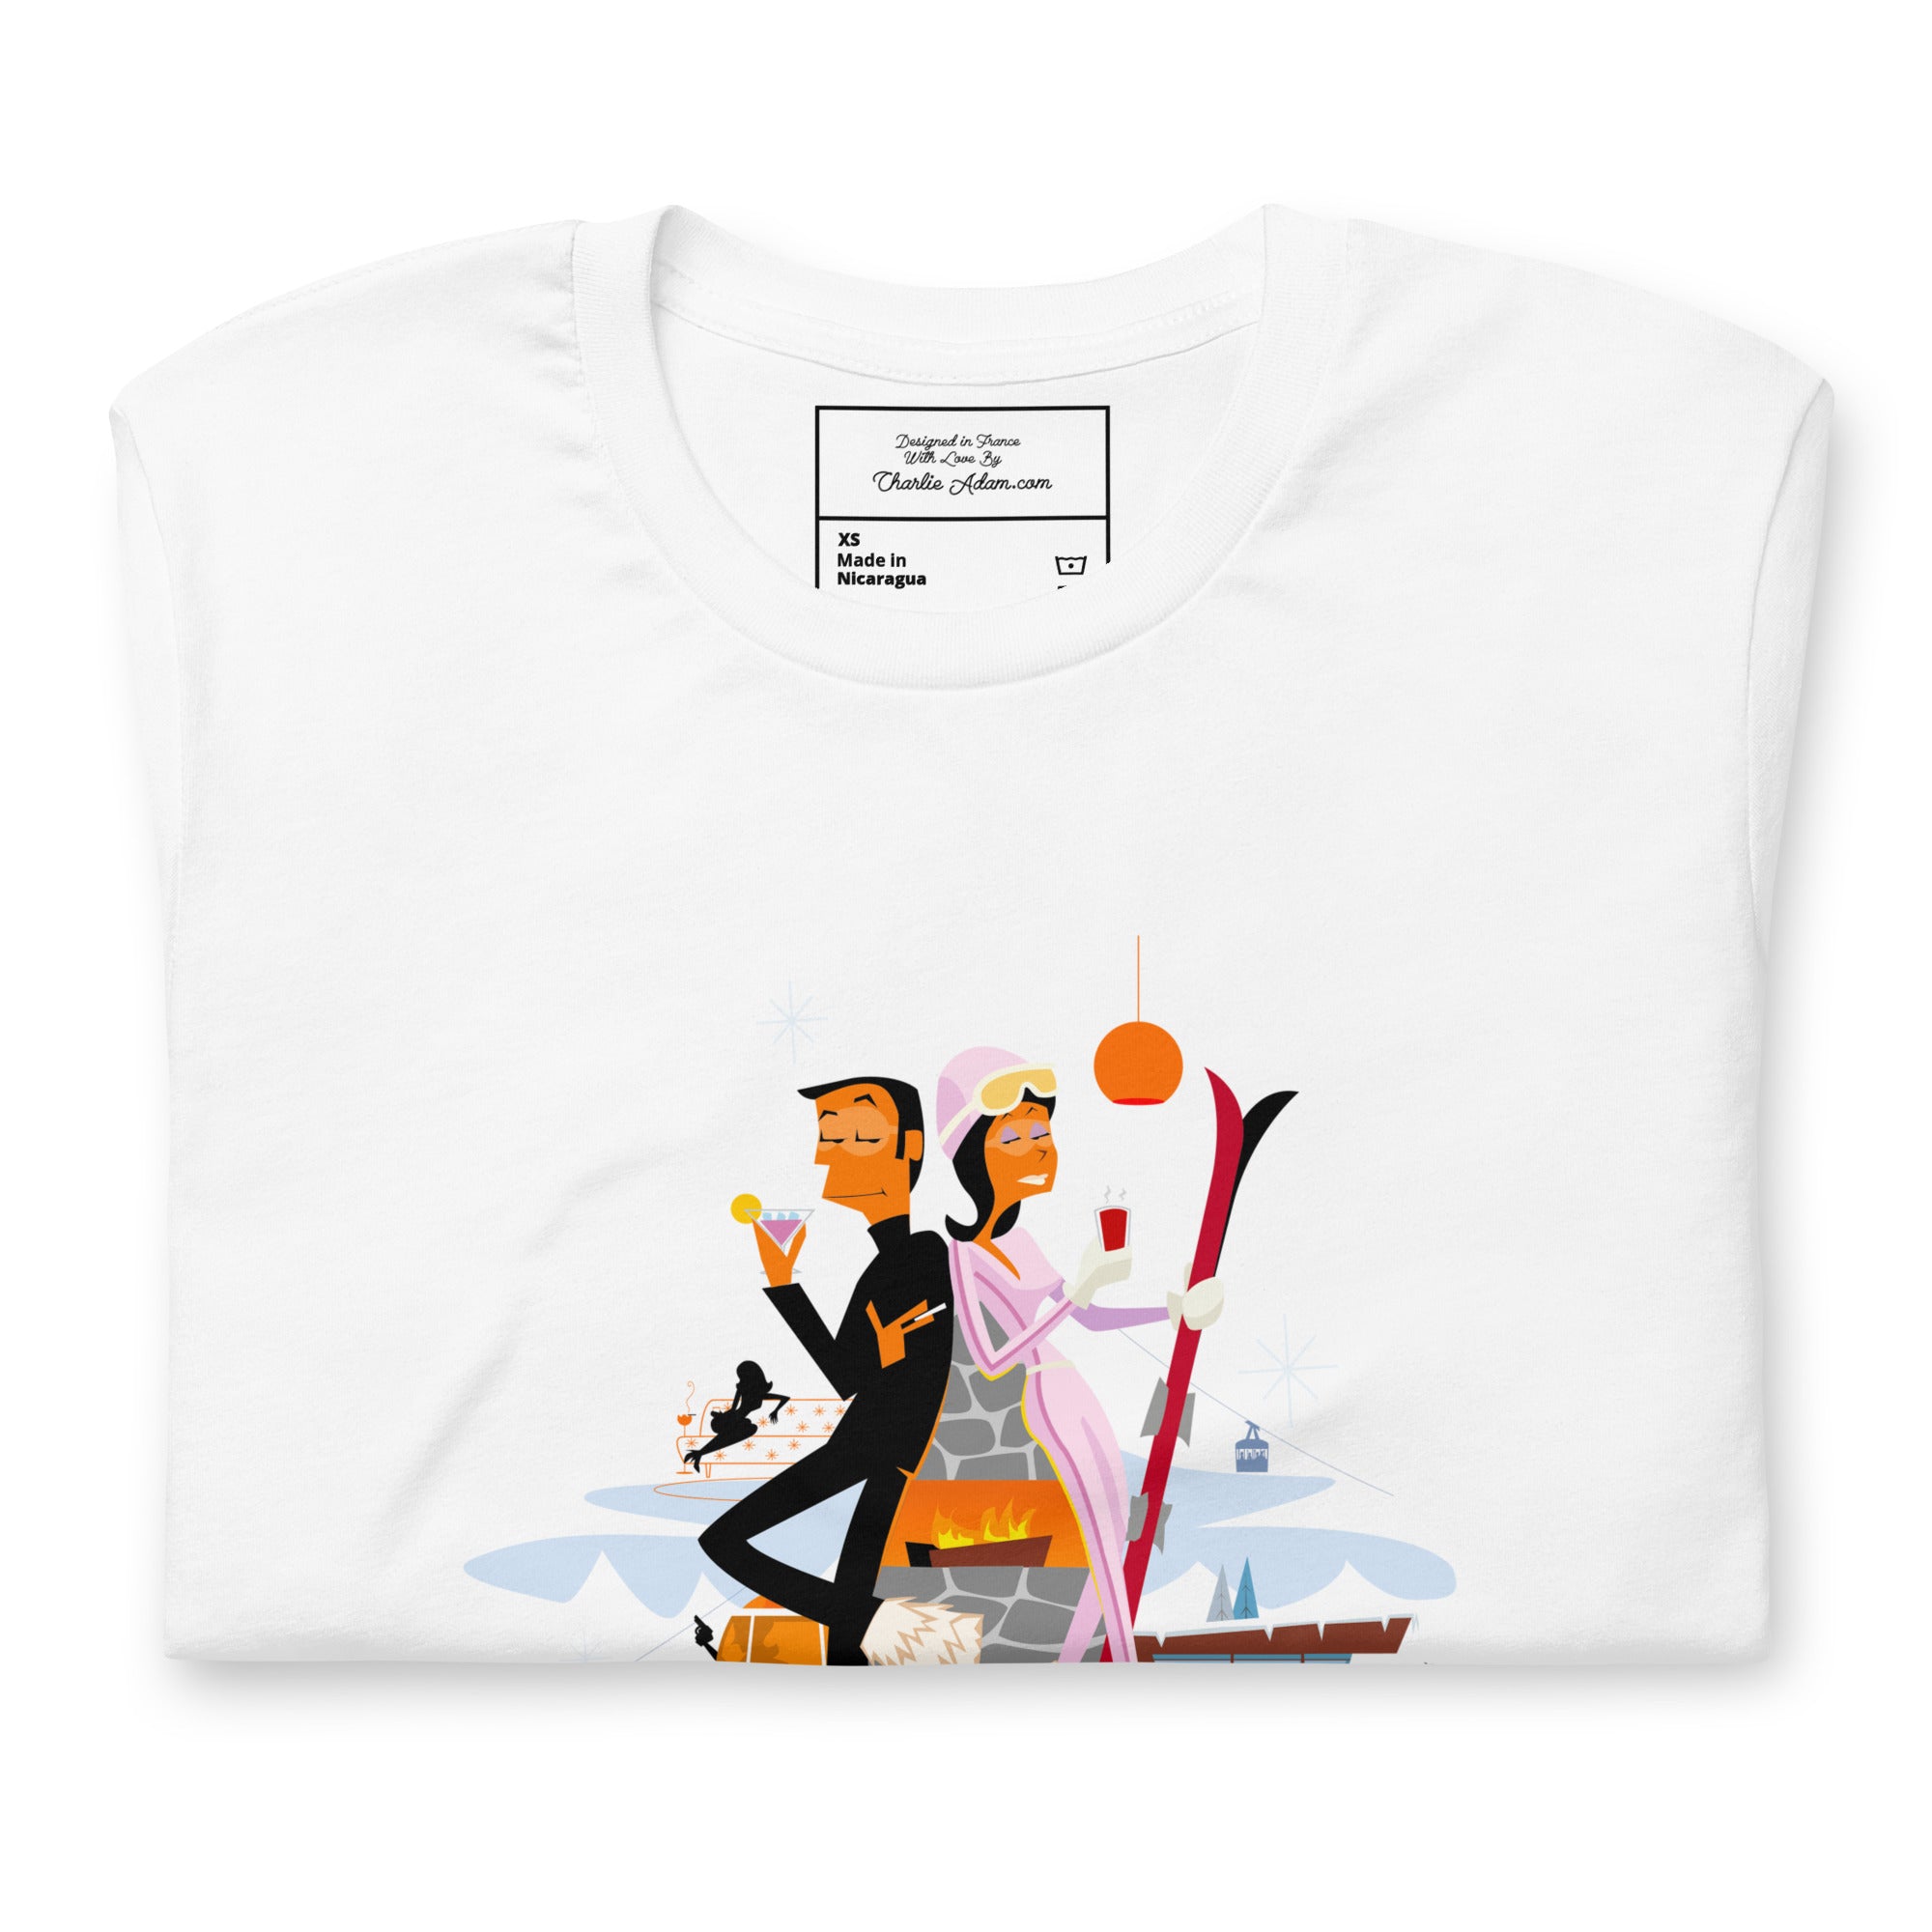 T-shirt en coton unisexe License To Chill Mission Après-Ski sur couleurs claires